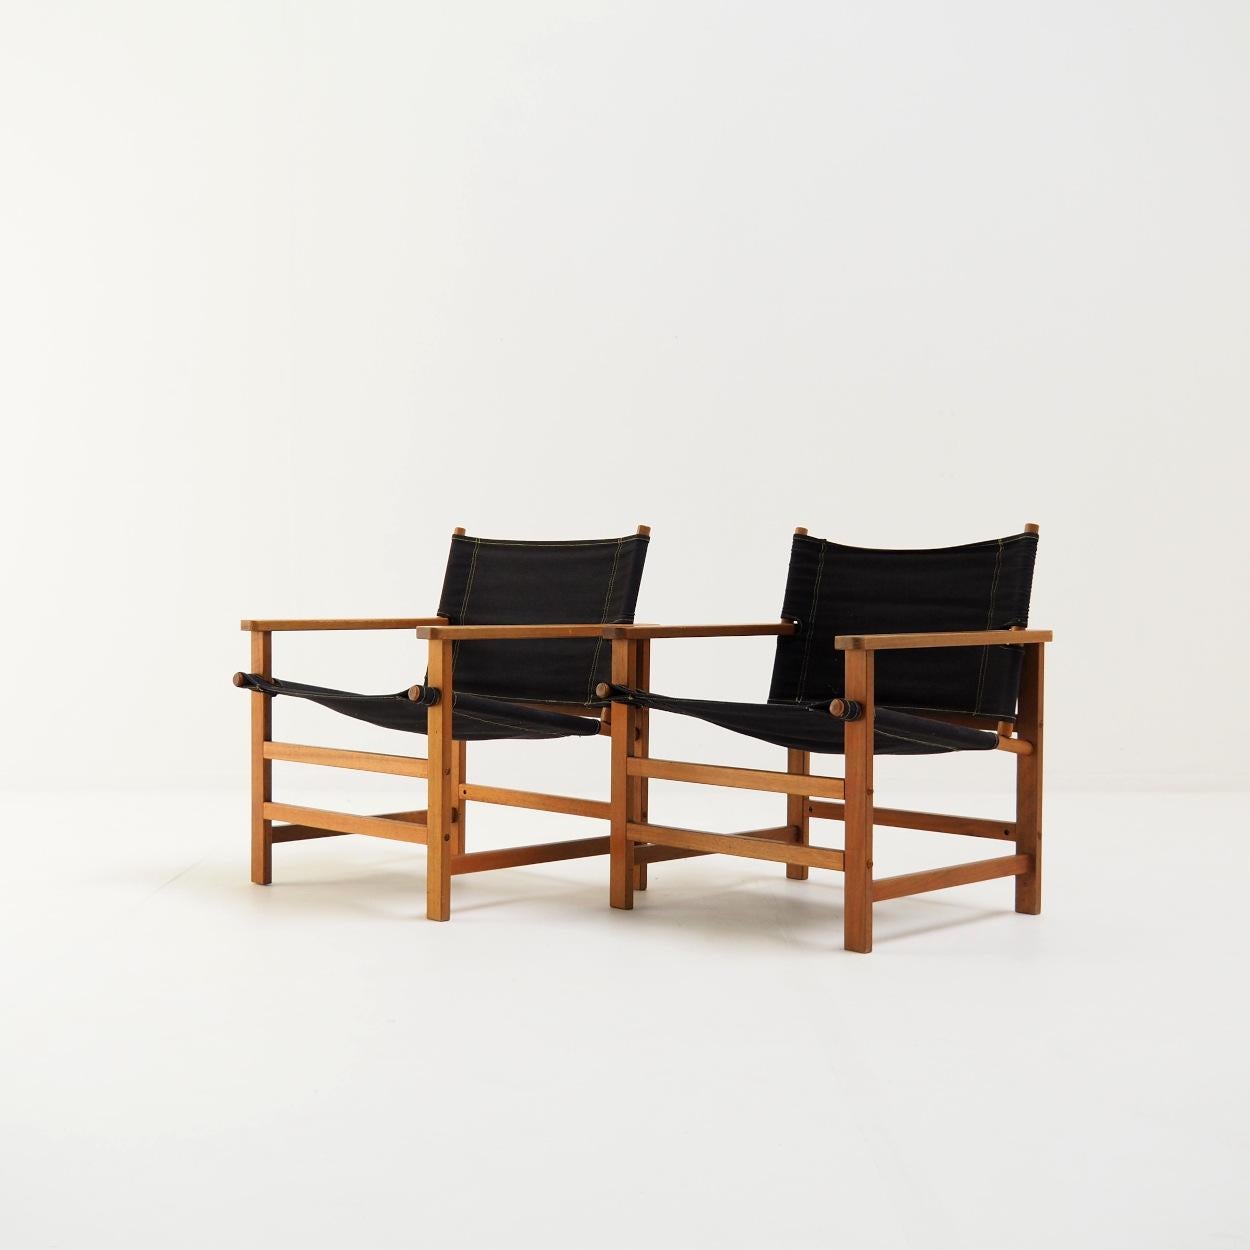 Charmantes Set von sehr gut erhaltenen Vintage IKEA Safari-Stühlen.

Die Stühle heißen 